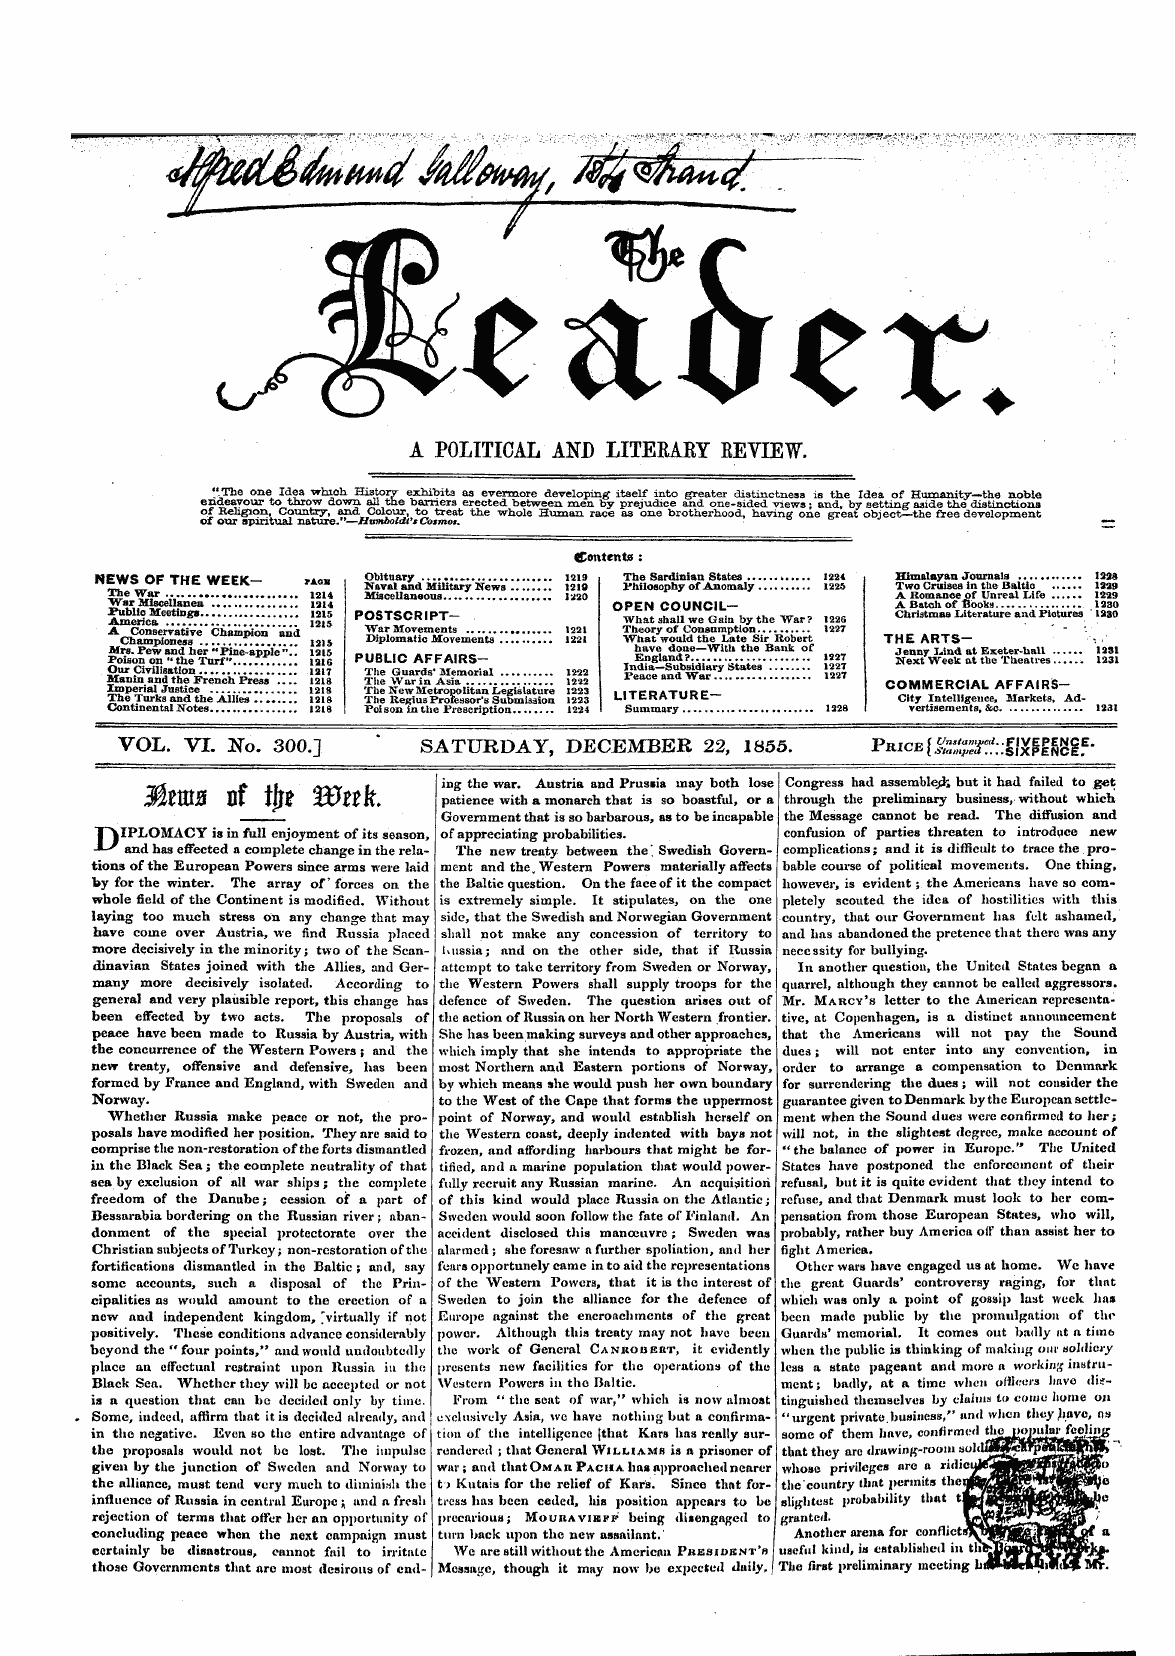 Leader (1850-1860): jS F Y, 1st edition - Mtmz Of Ijr* Wttk.